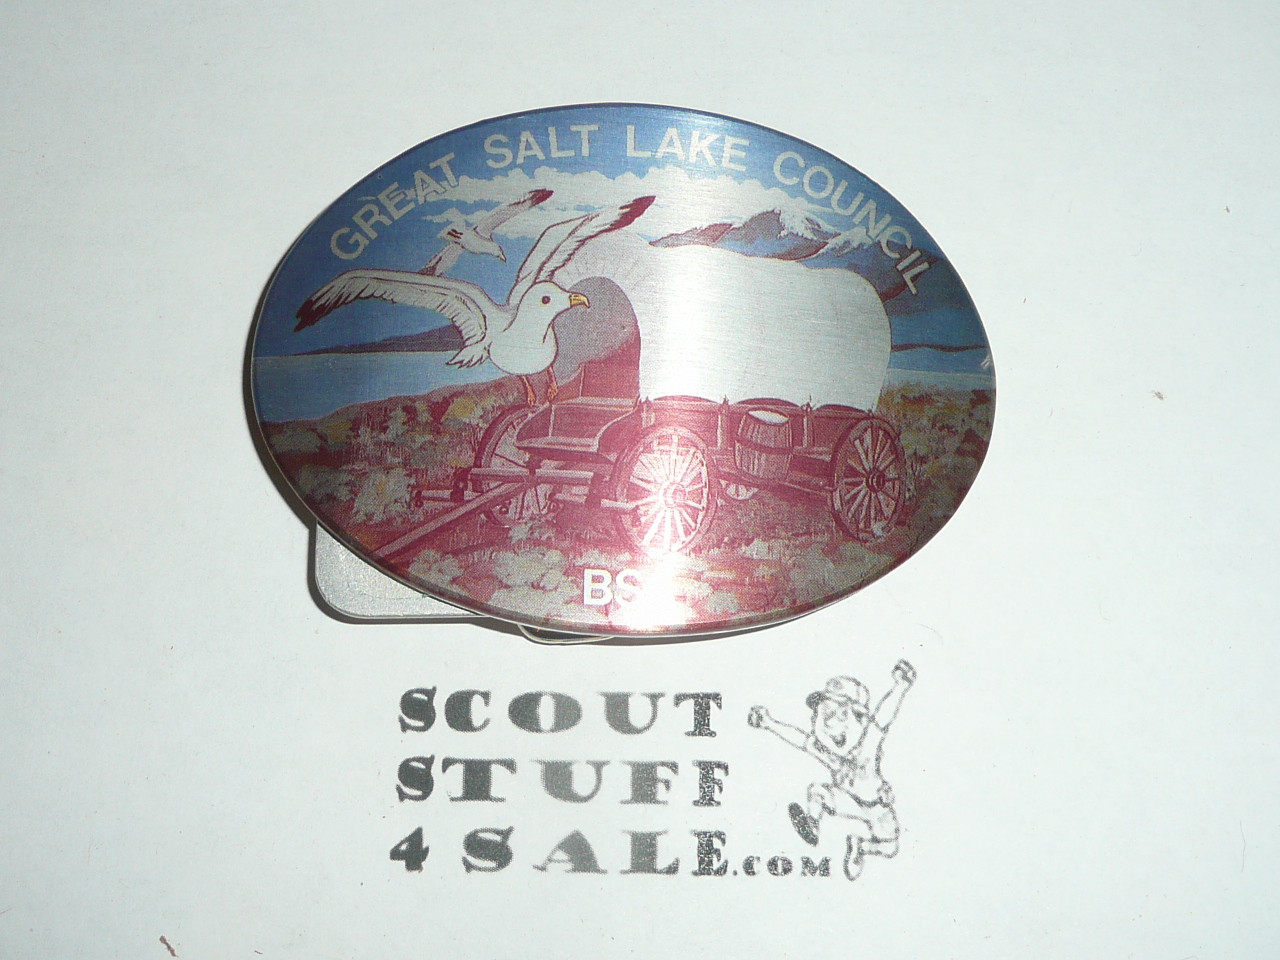 Great Salt Lake Council, Boy Scout Belt Buckle